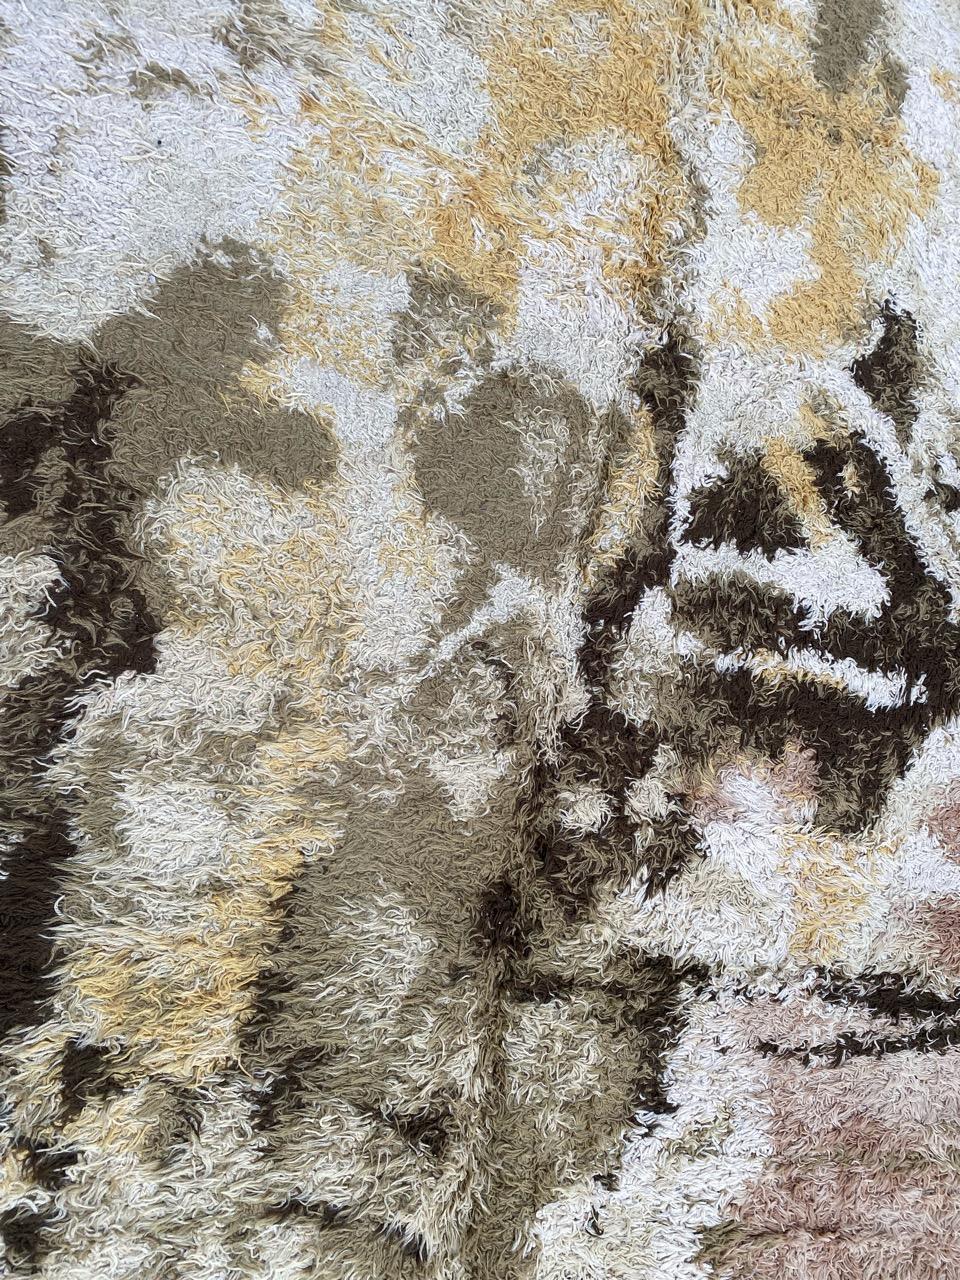 Hübscher skandinavischer Teppich aus den 70er Jahren mit schönem abstraktem Muster und schönen Farben, mechanische Fertigung mit Wollsamt auf Baumwollunterlage.

✨✨✨
